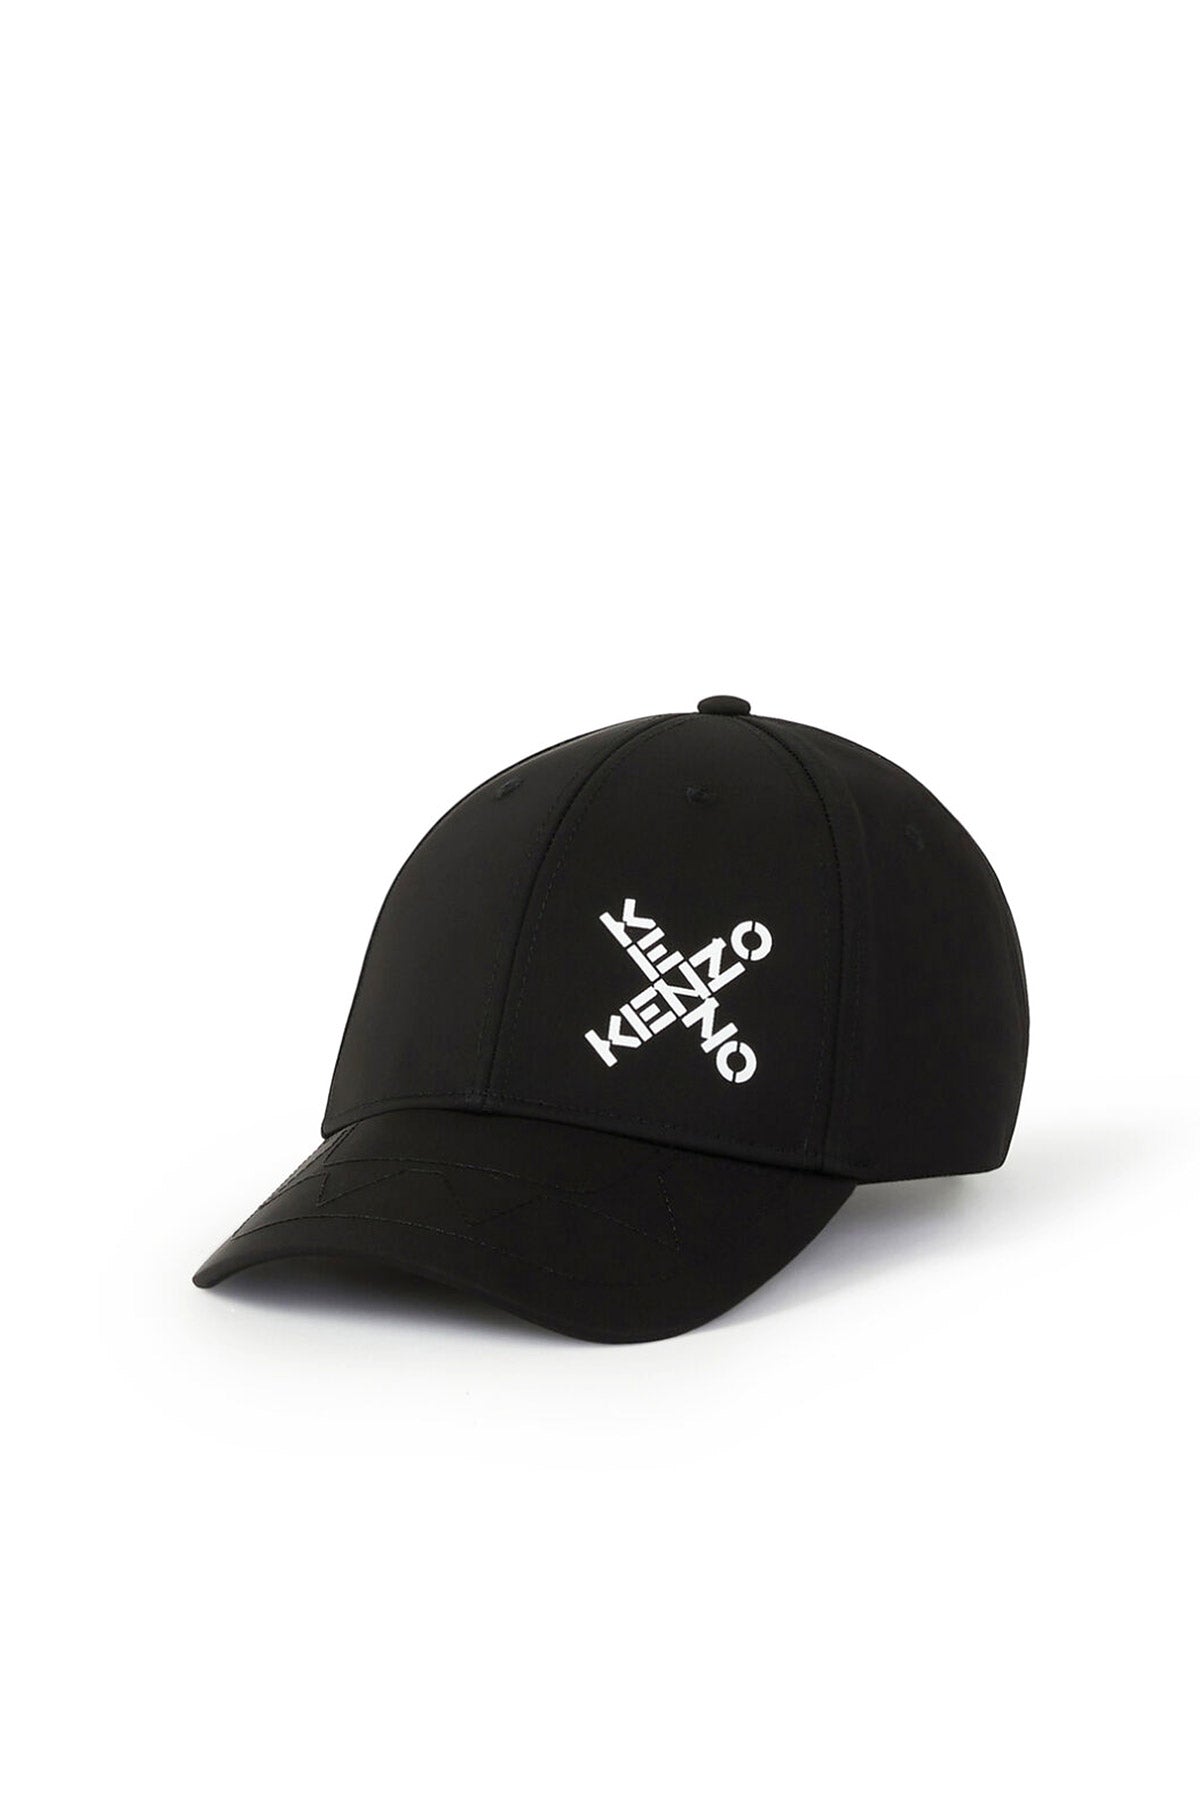 Kenzo Sport Şapka-Libas Trendy Fashion Store